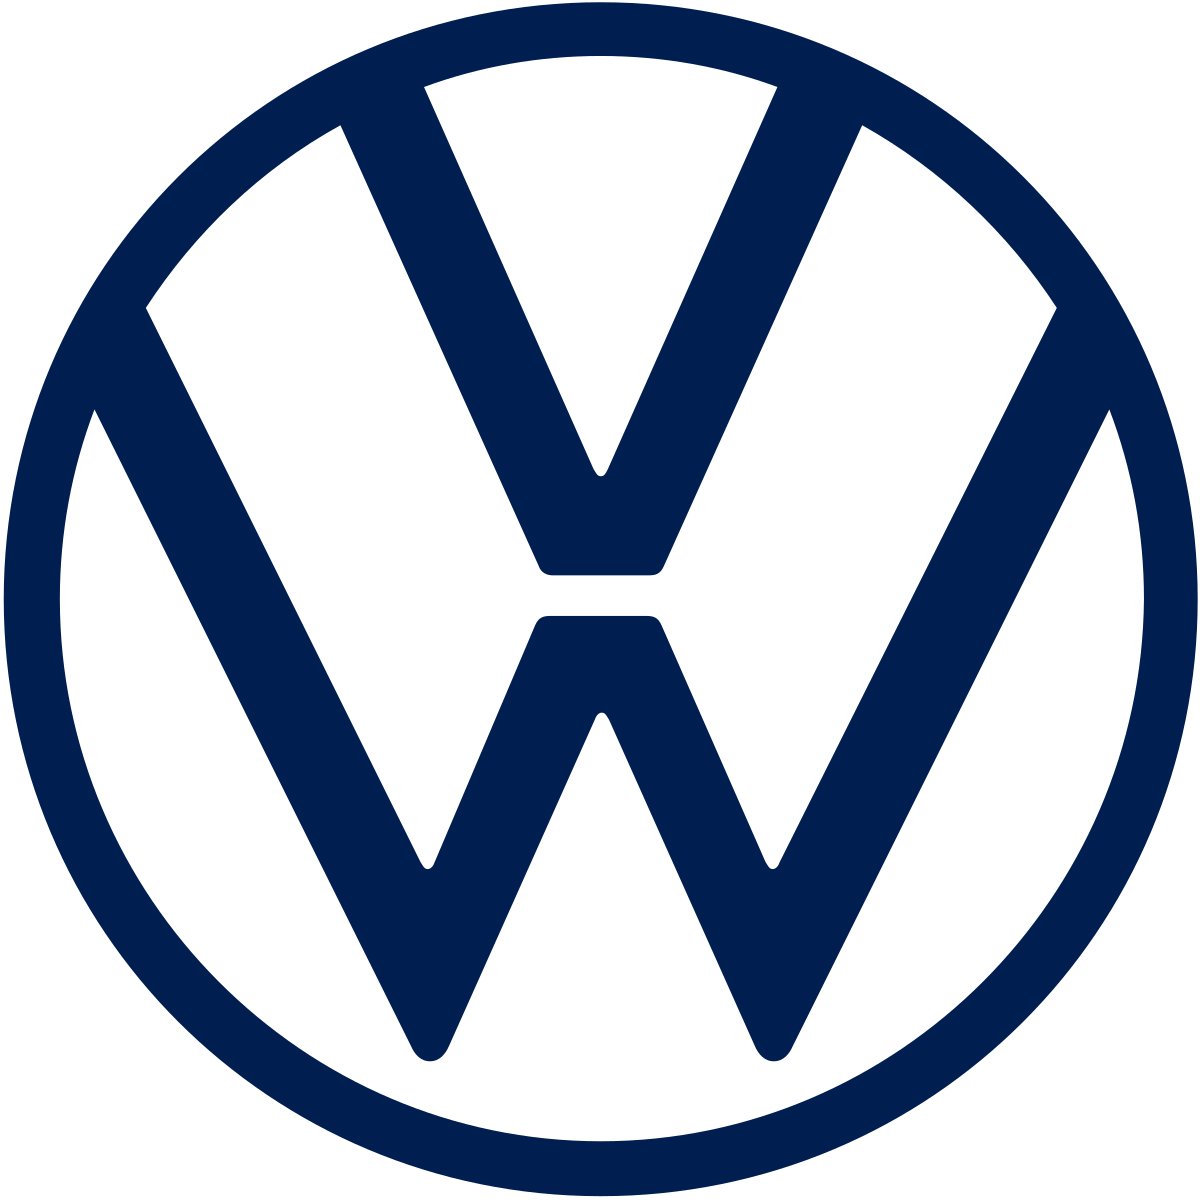 logo vw